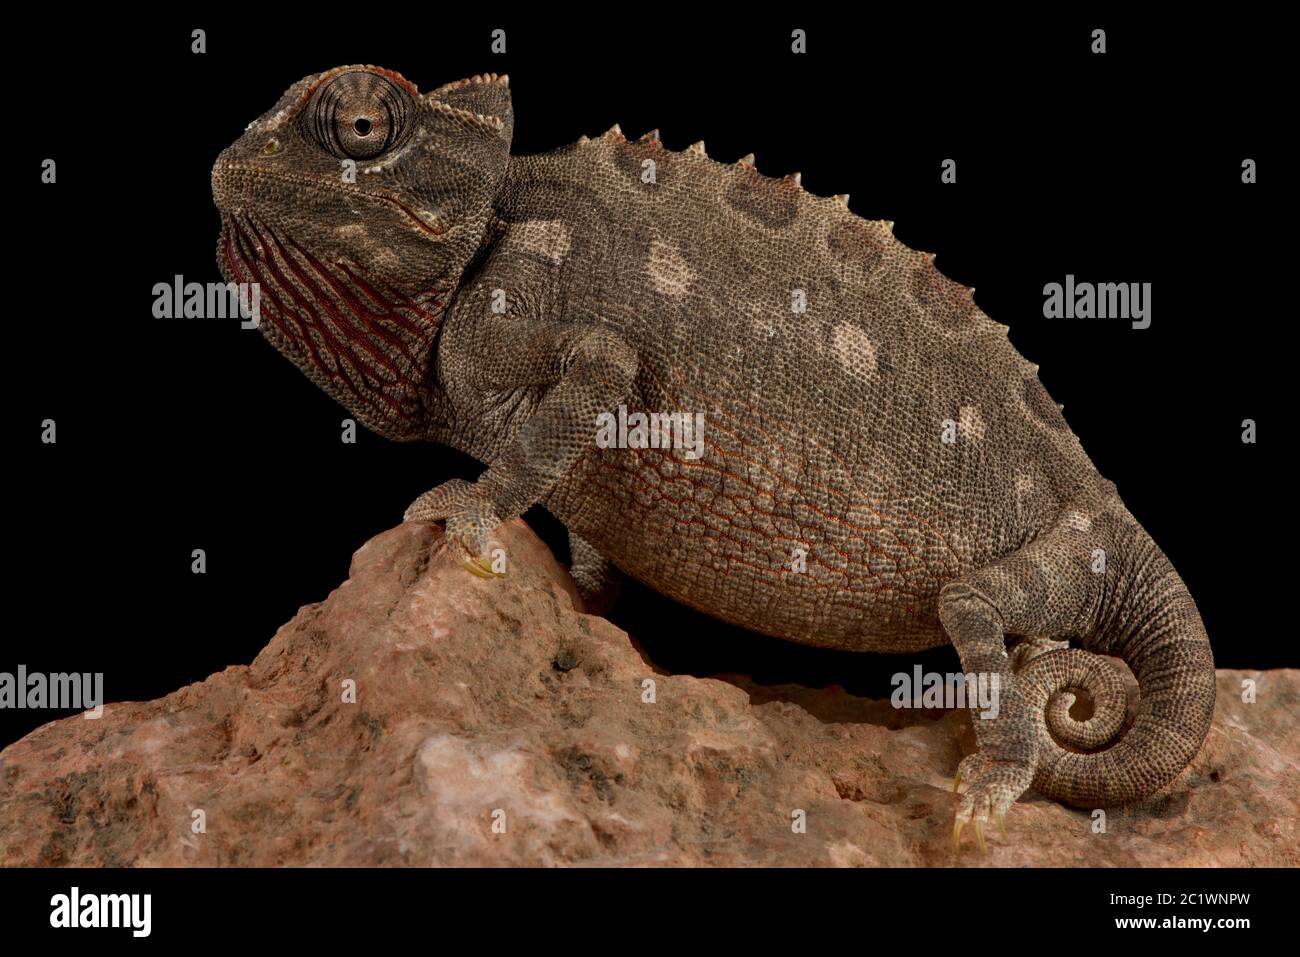 Namaqua chameleon (Chamaeleo namaquensis) Stock Photo